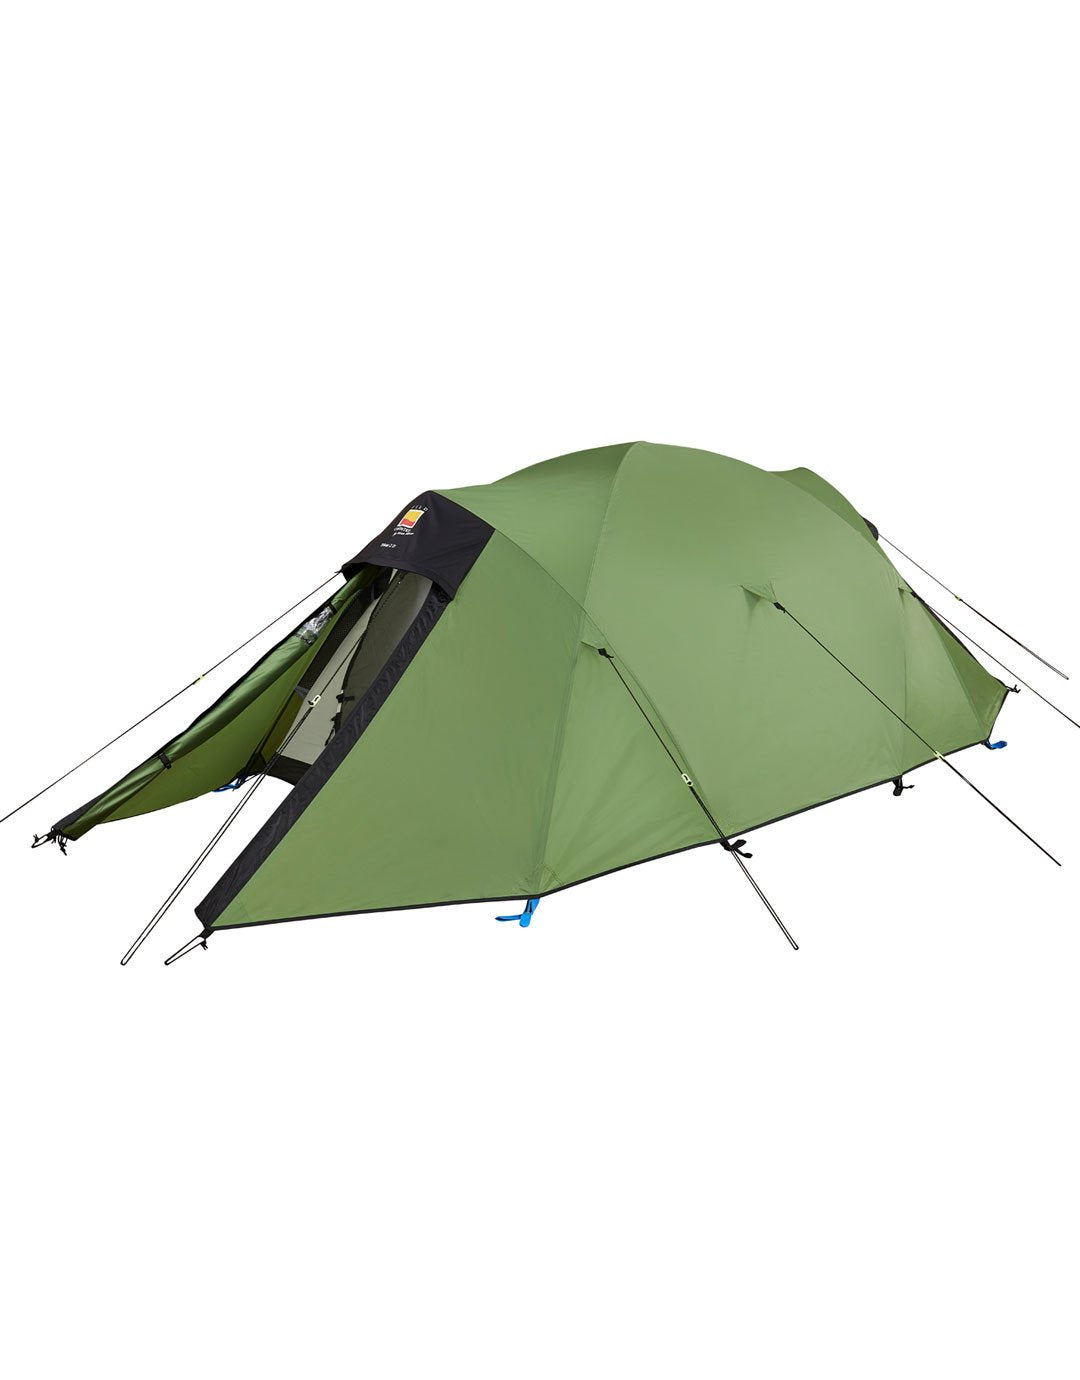 Trisar 2D Tent